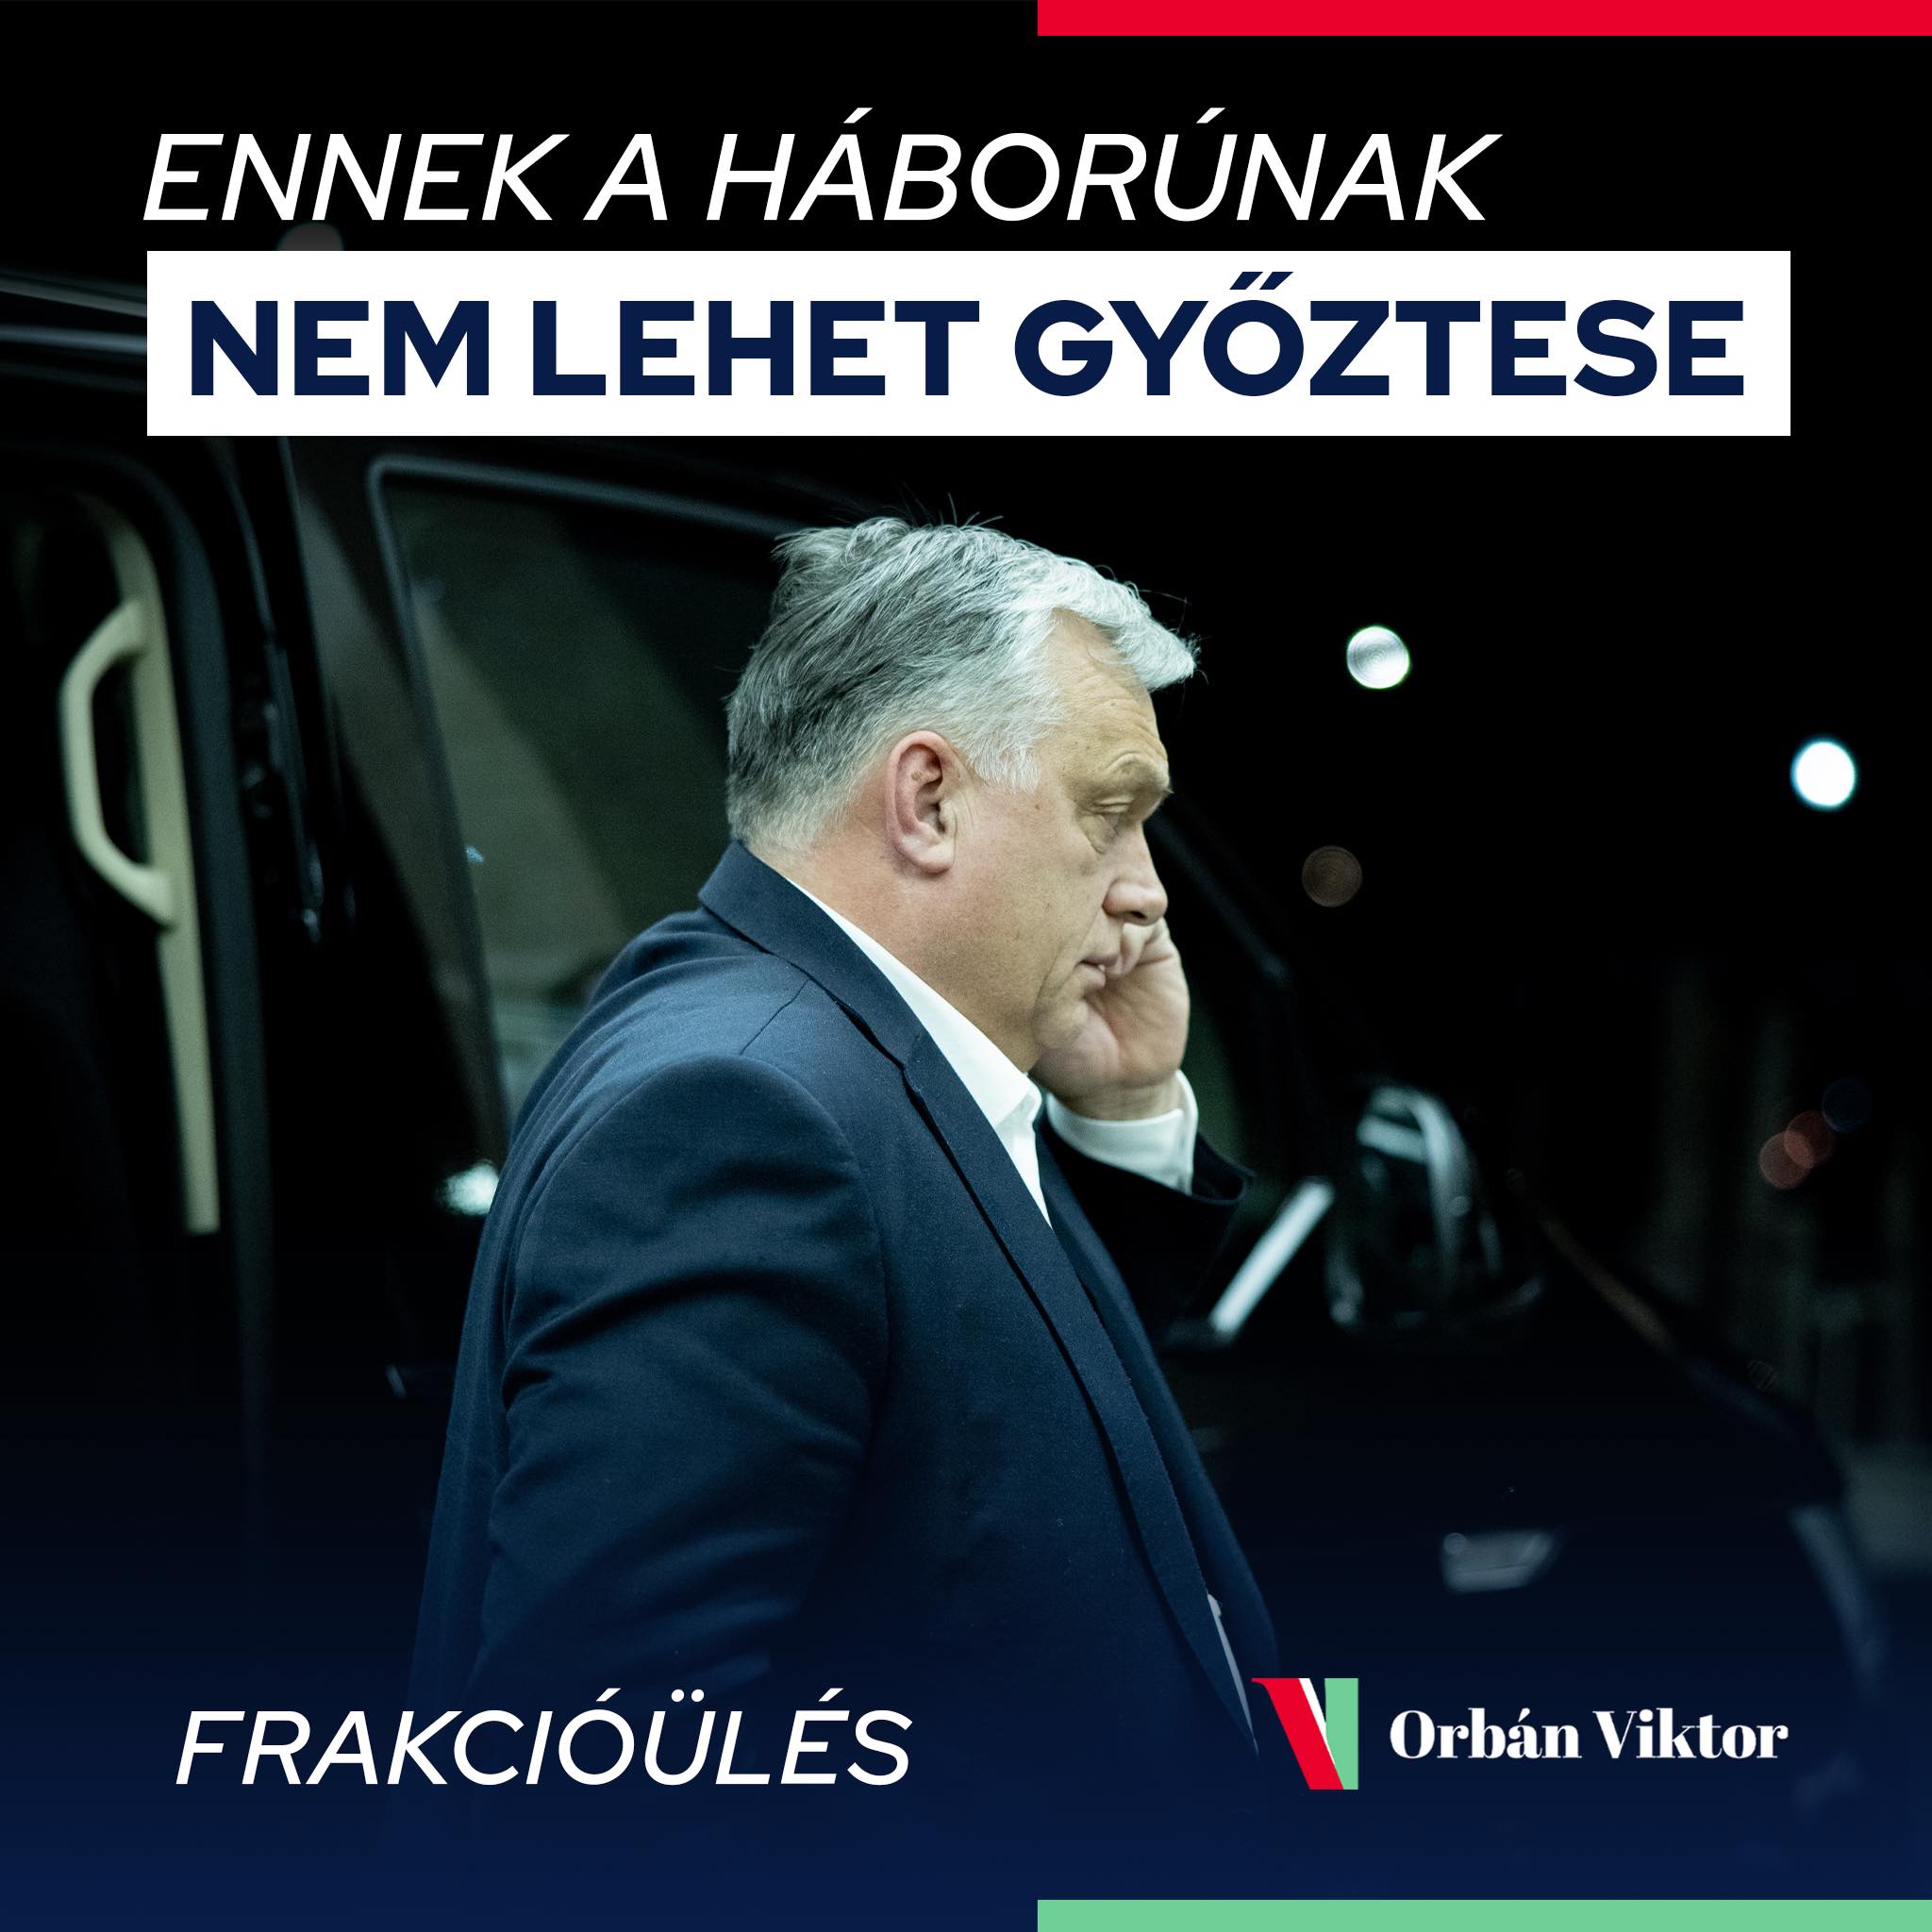 'No Winner Possible' in Ukraine, Says Orbán